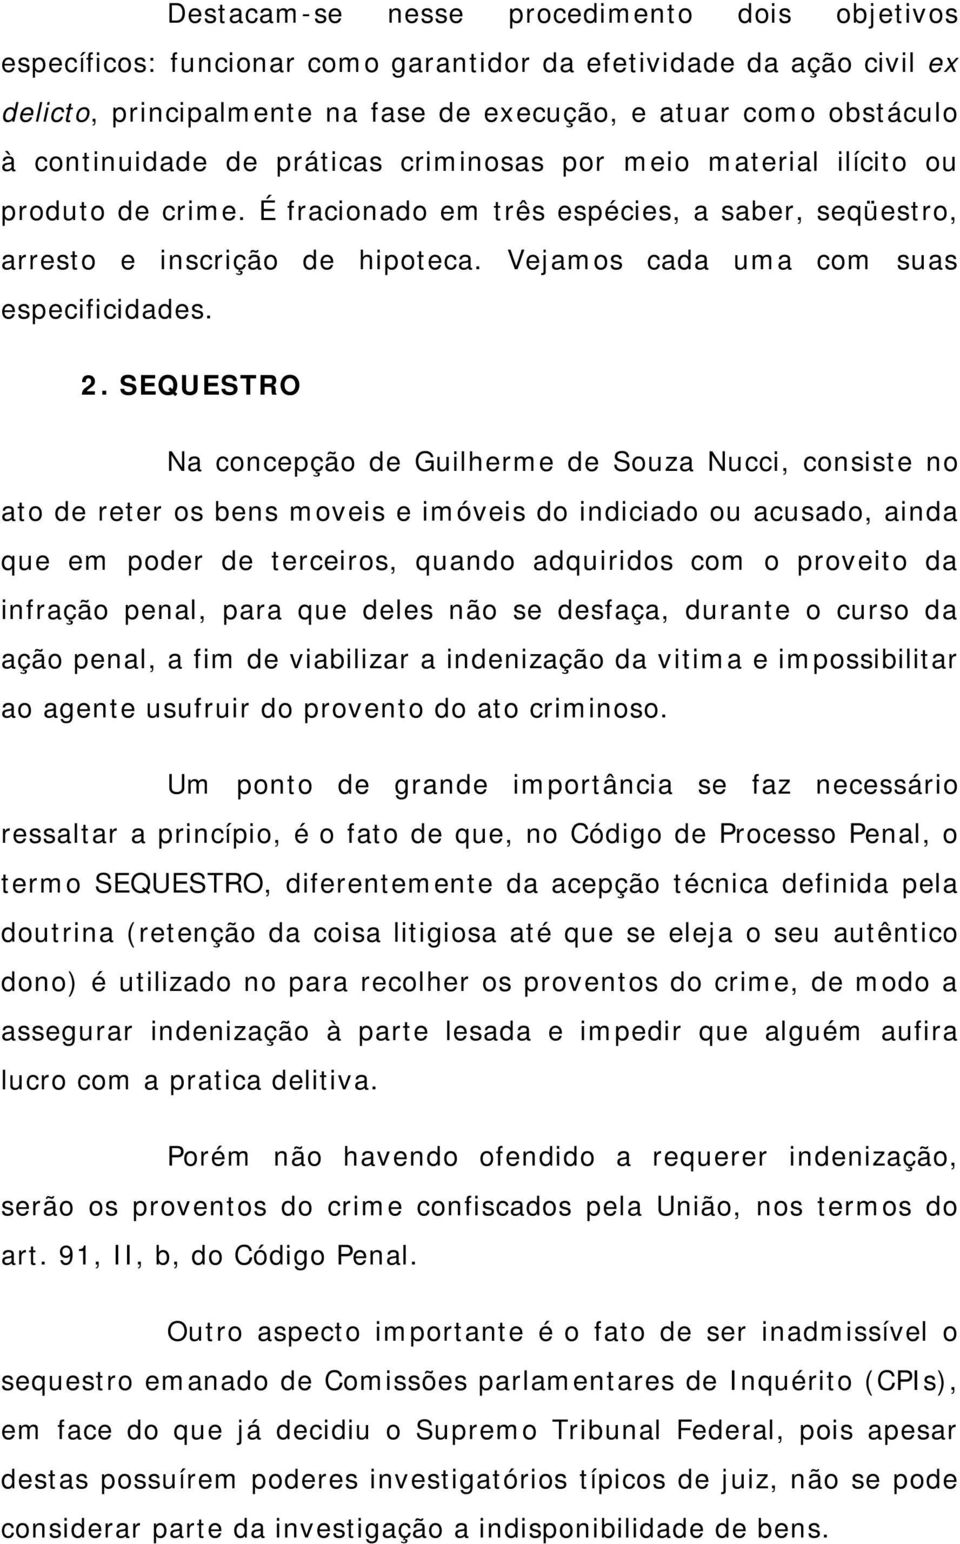 SEQUESTRO Na concepção de Guilherme de Souza Nucci, consiste no ato de reter os bens moveis e imóveis do indiciado ou acusado, ainda que em poder de terceiros, quando adquiridos com o proveito da